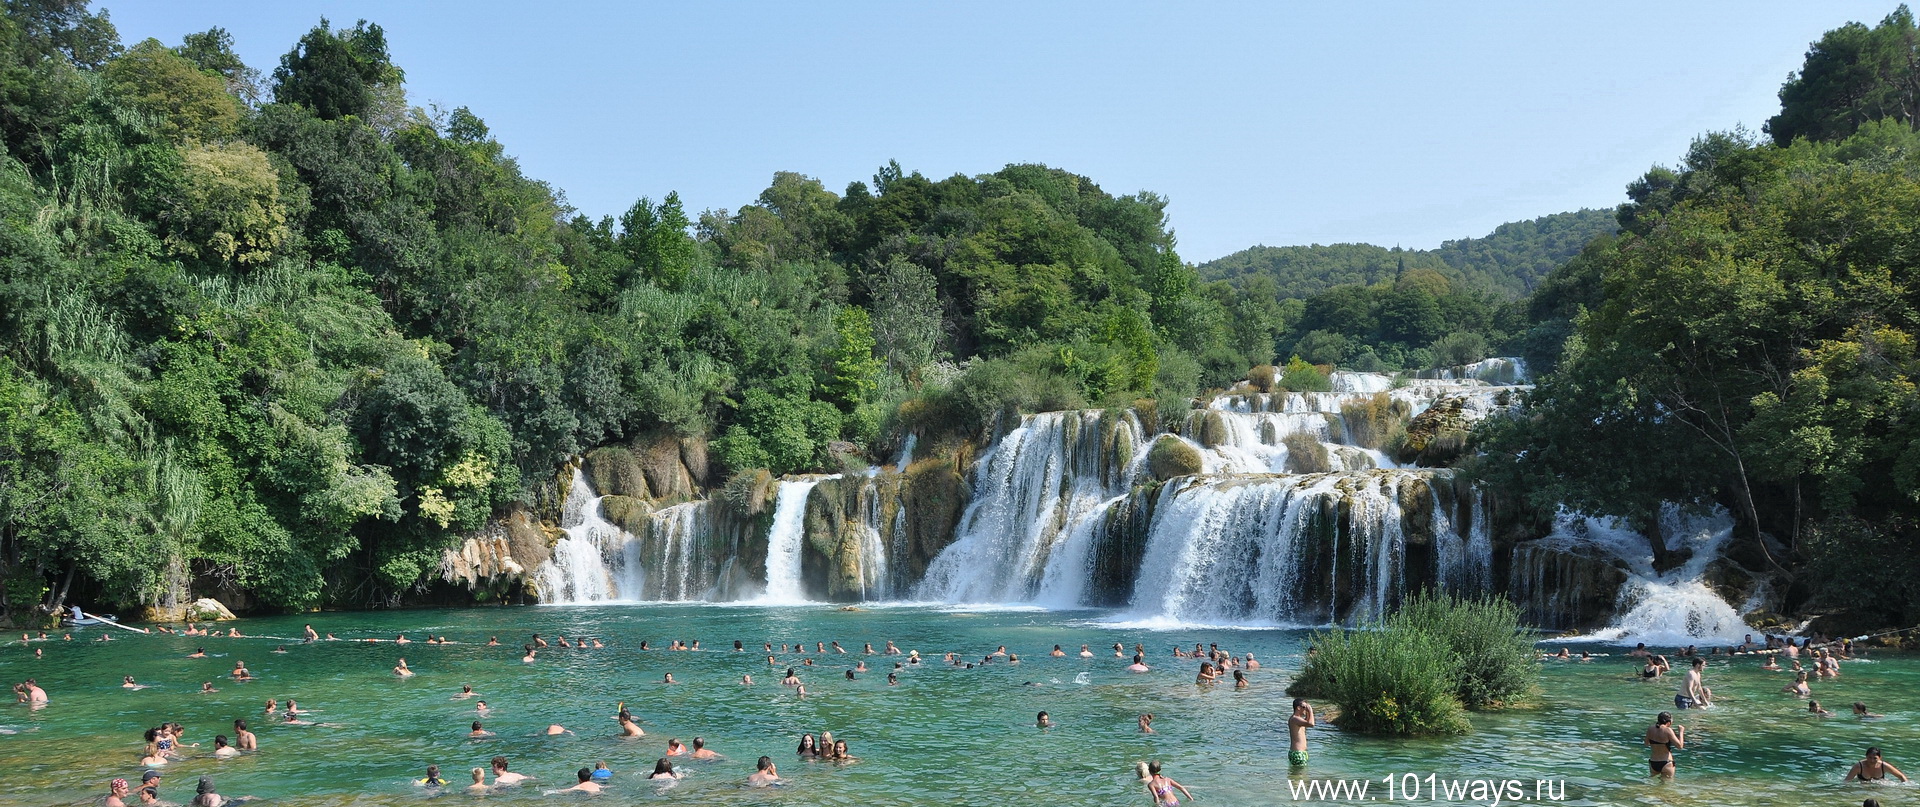 купание Водопад Скрадински бук Хорватия